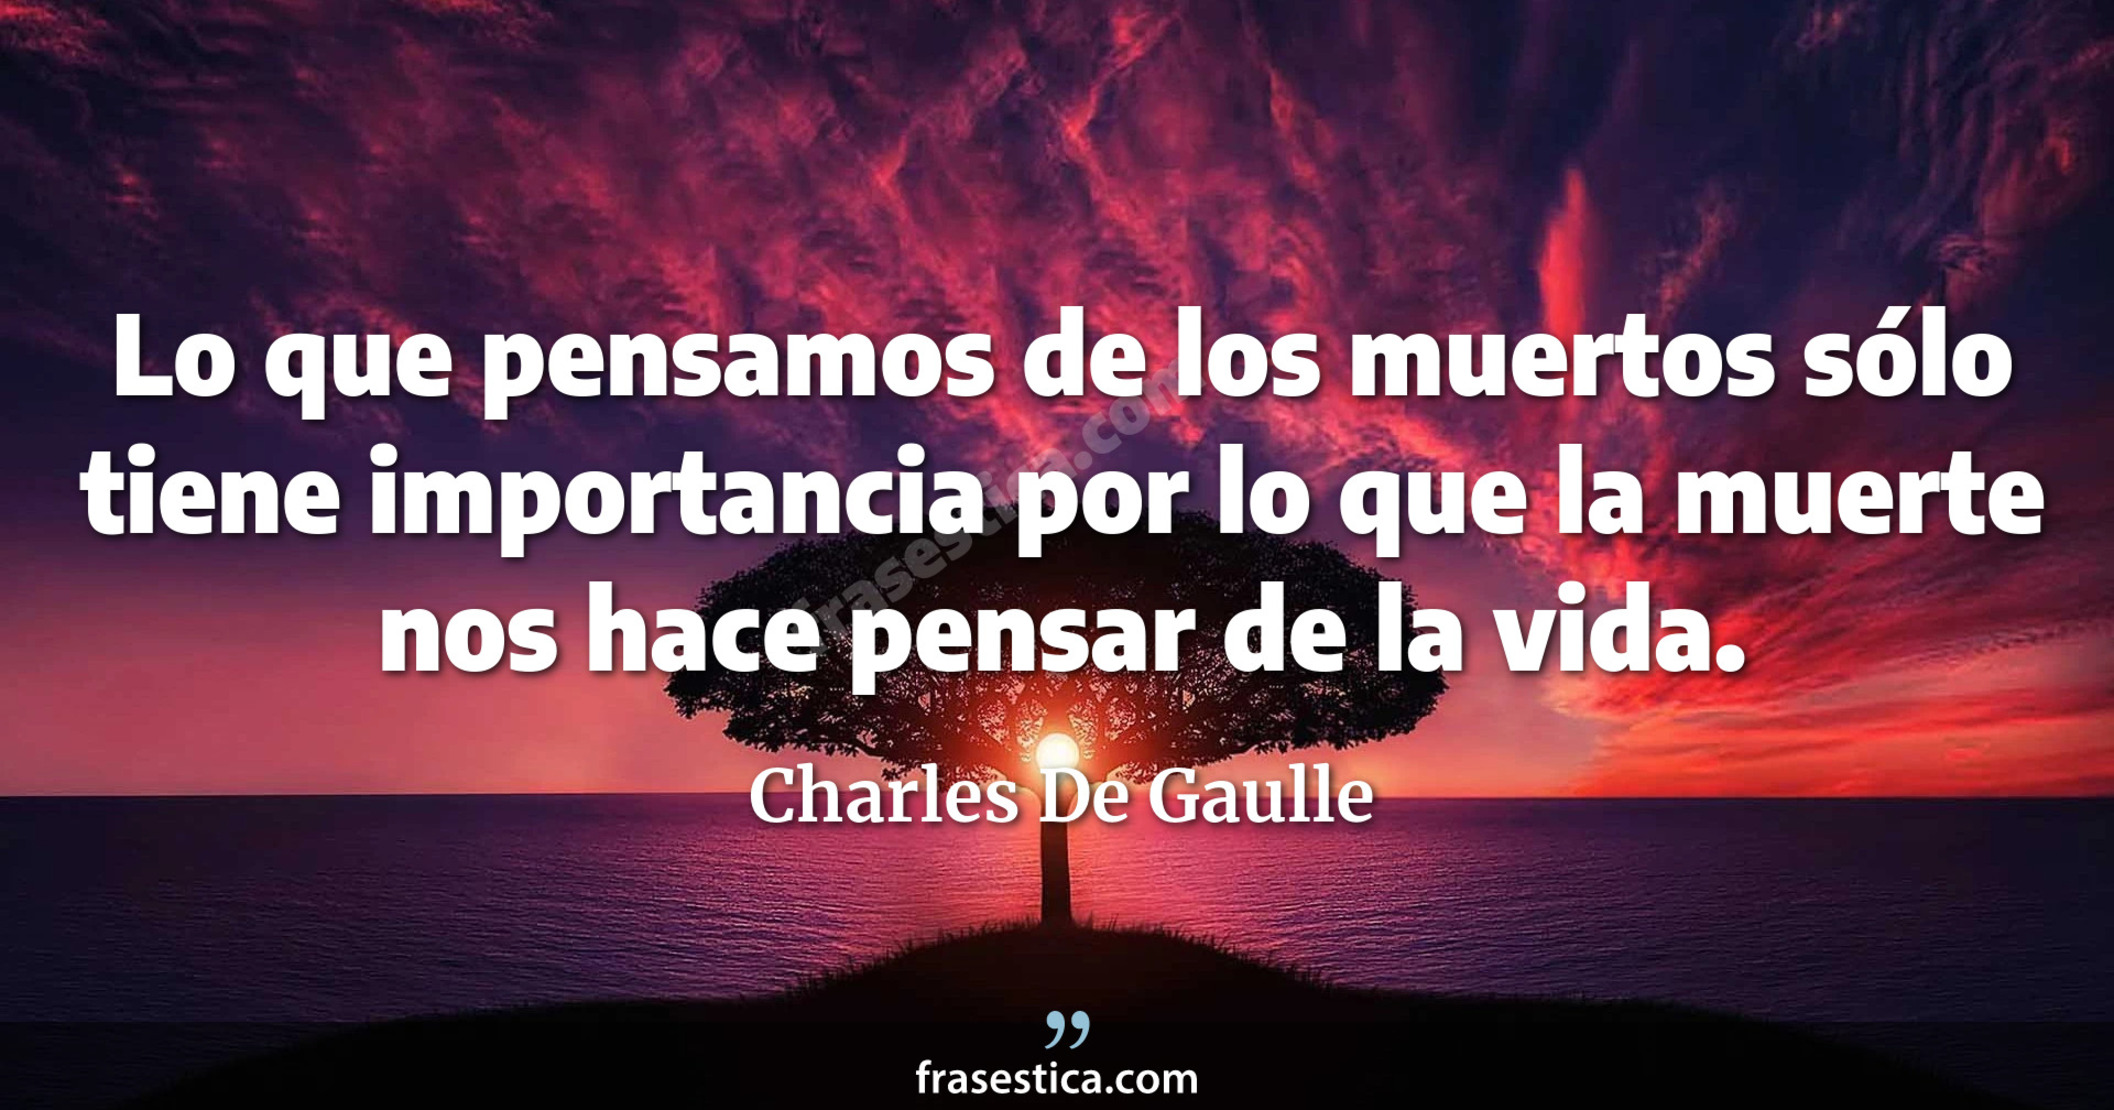 Lo que pensamos de los muertos sólo tiene importancia por lo que la muerte nos hace pensar de la vida. - Charles De Gaulle